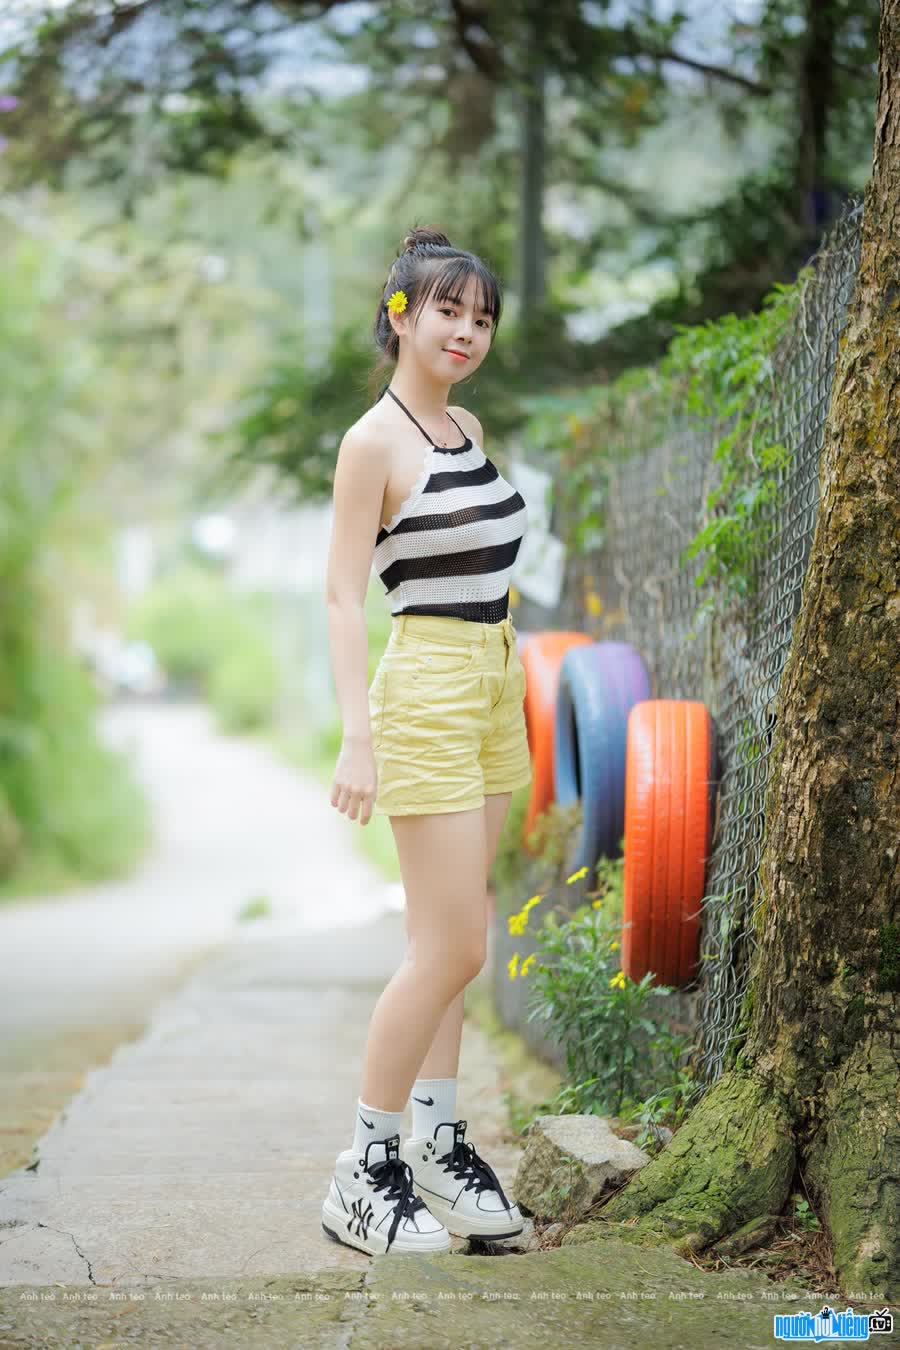 Quỳnh Giang sở hữu nhan sắc xinh đẹp cùng thân hình cân đối